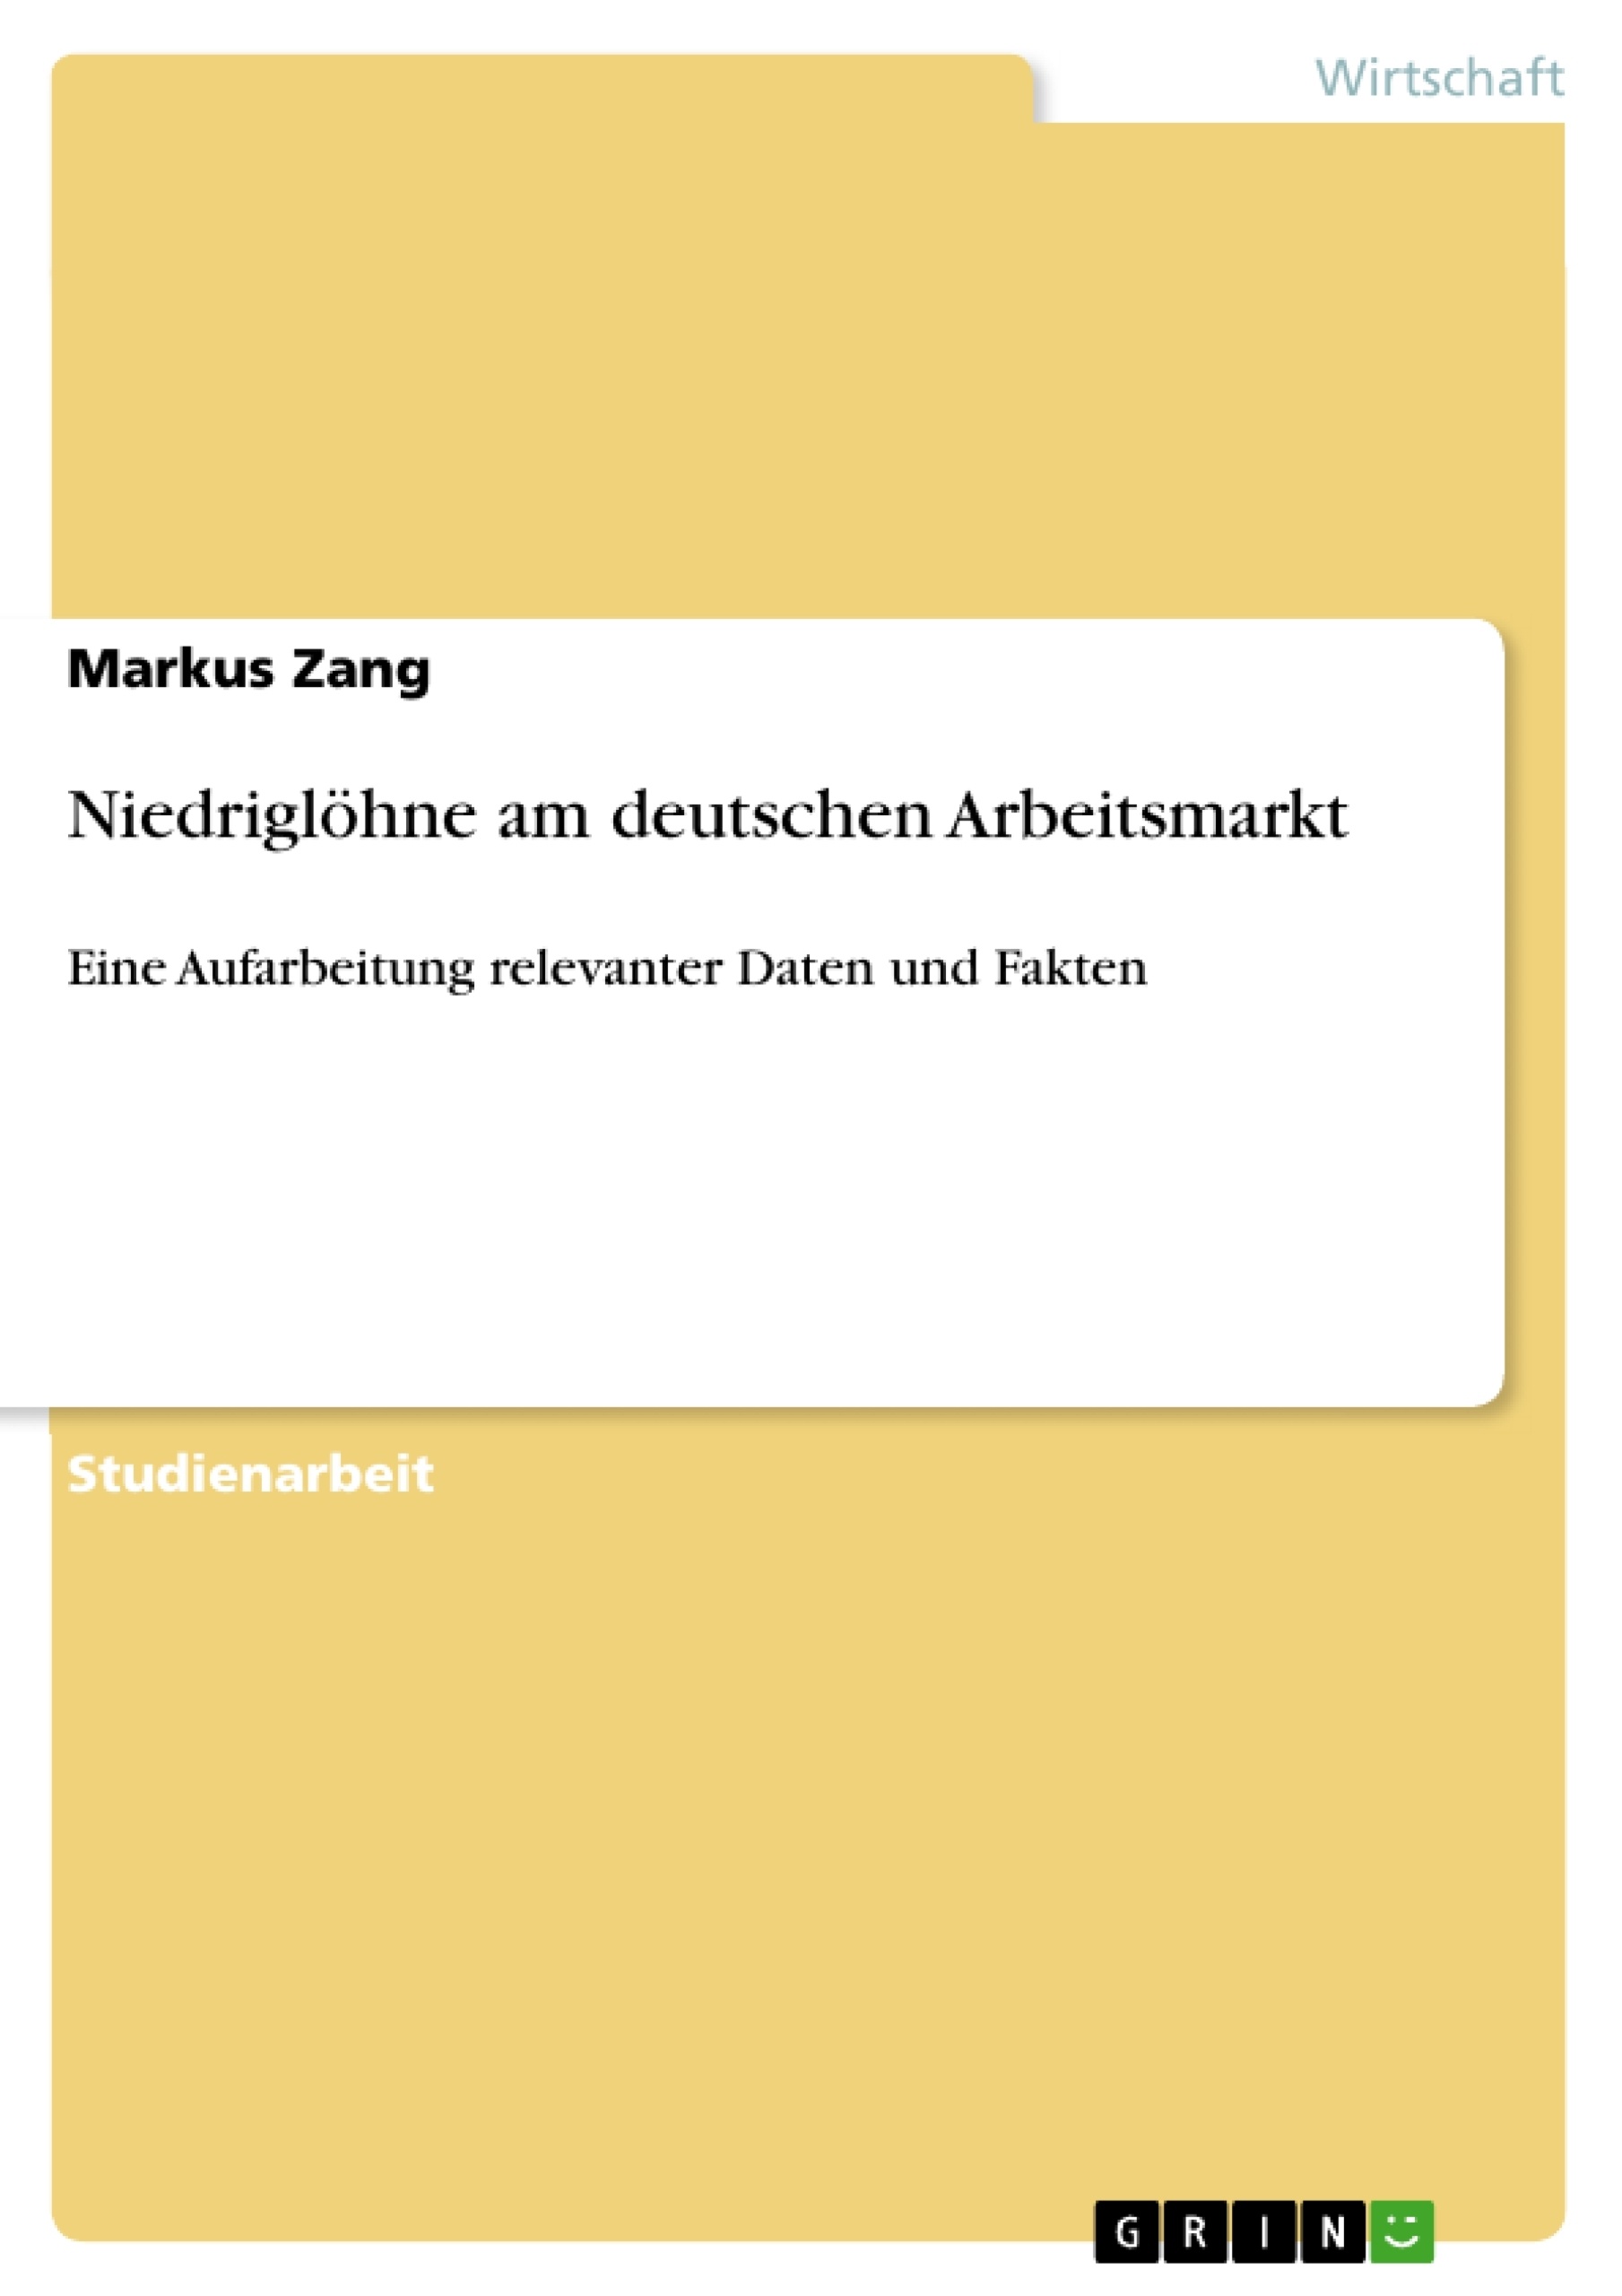 Título: Niedriglöhne am deutschen Arbeitsmarkt